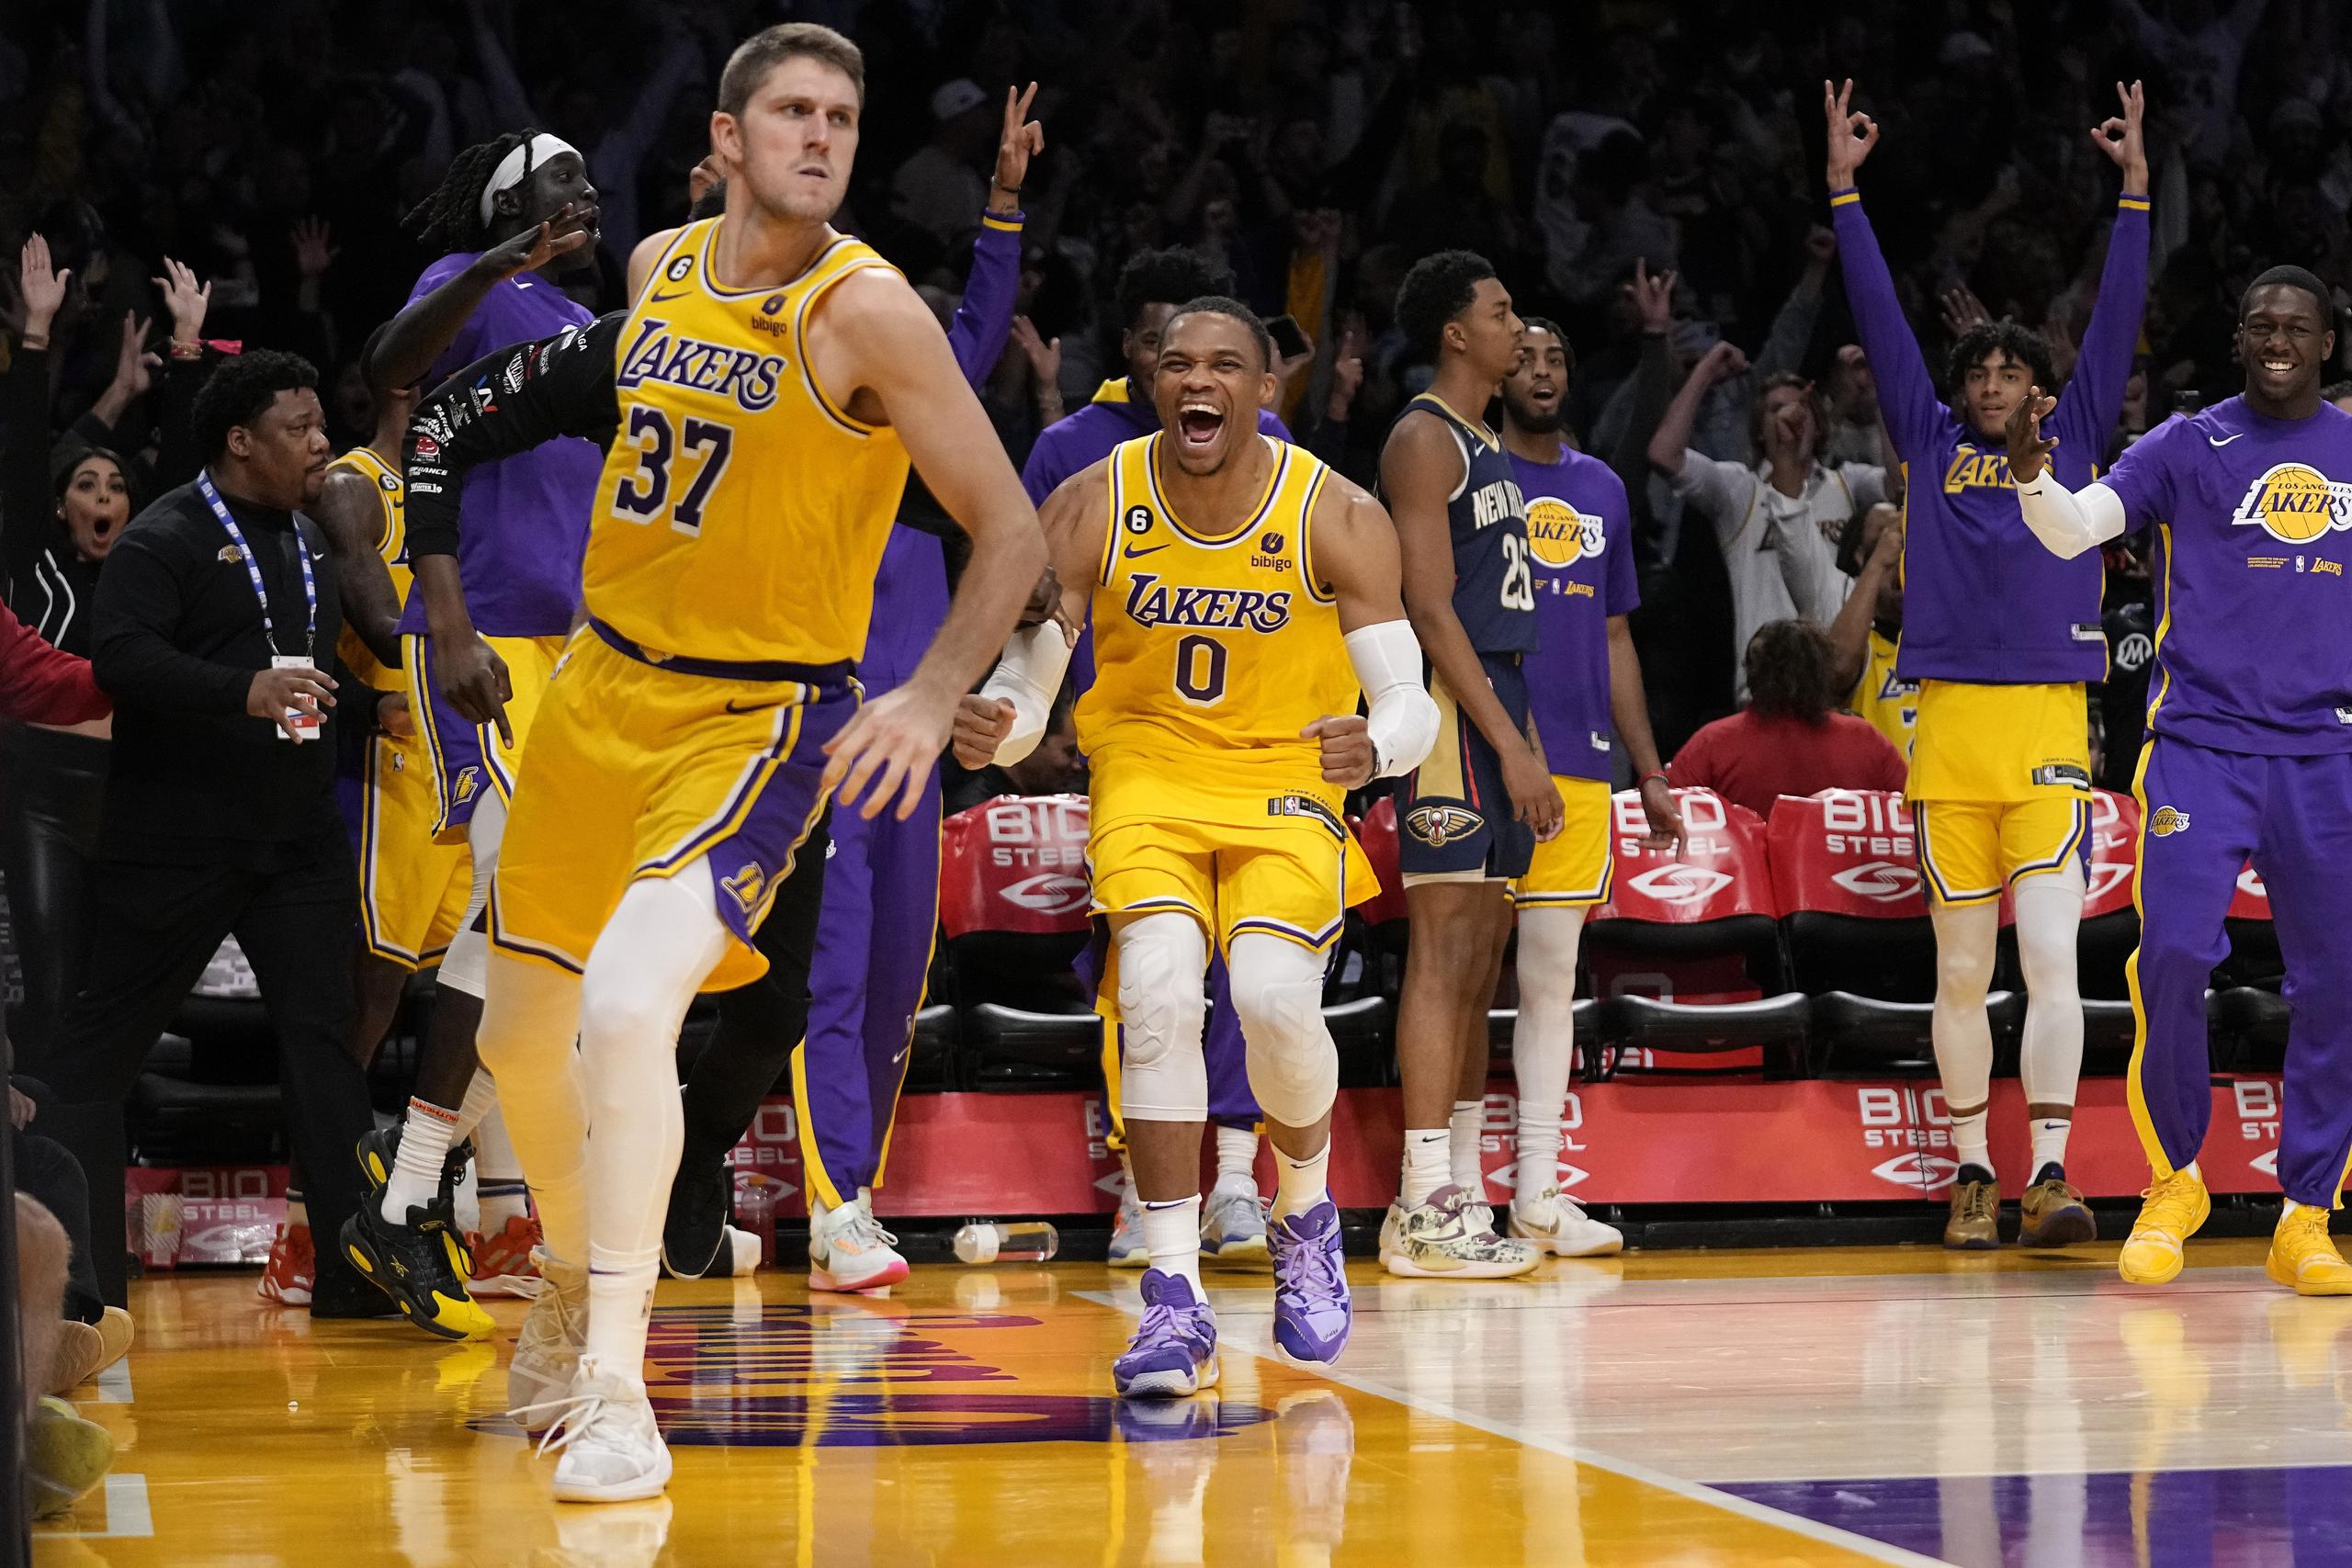 Matt Ryan, alero de los Lakers de Los Ángeles, festeja con Russell Westbrook luego de atinar un triple ante los Pelicans de Nueva Orleáns.